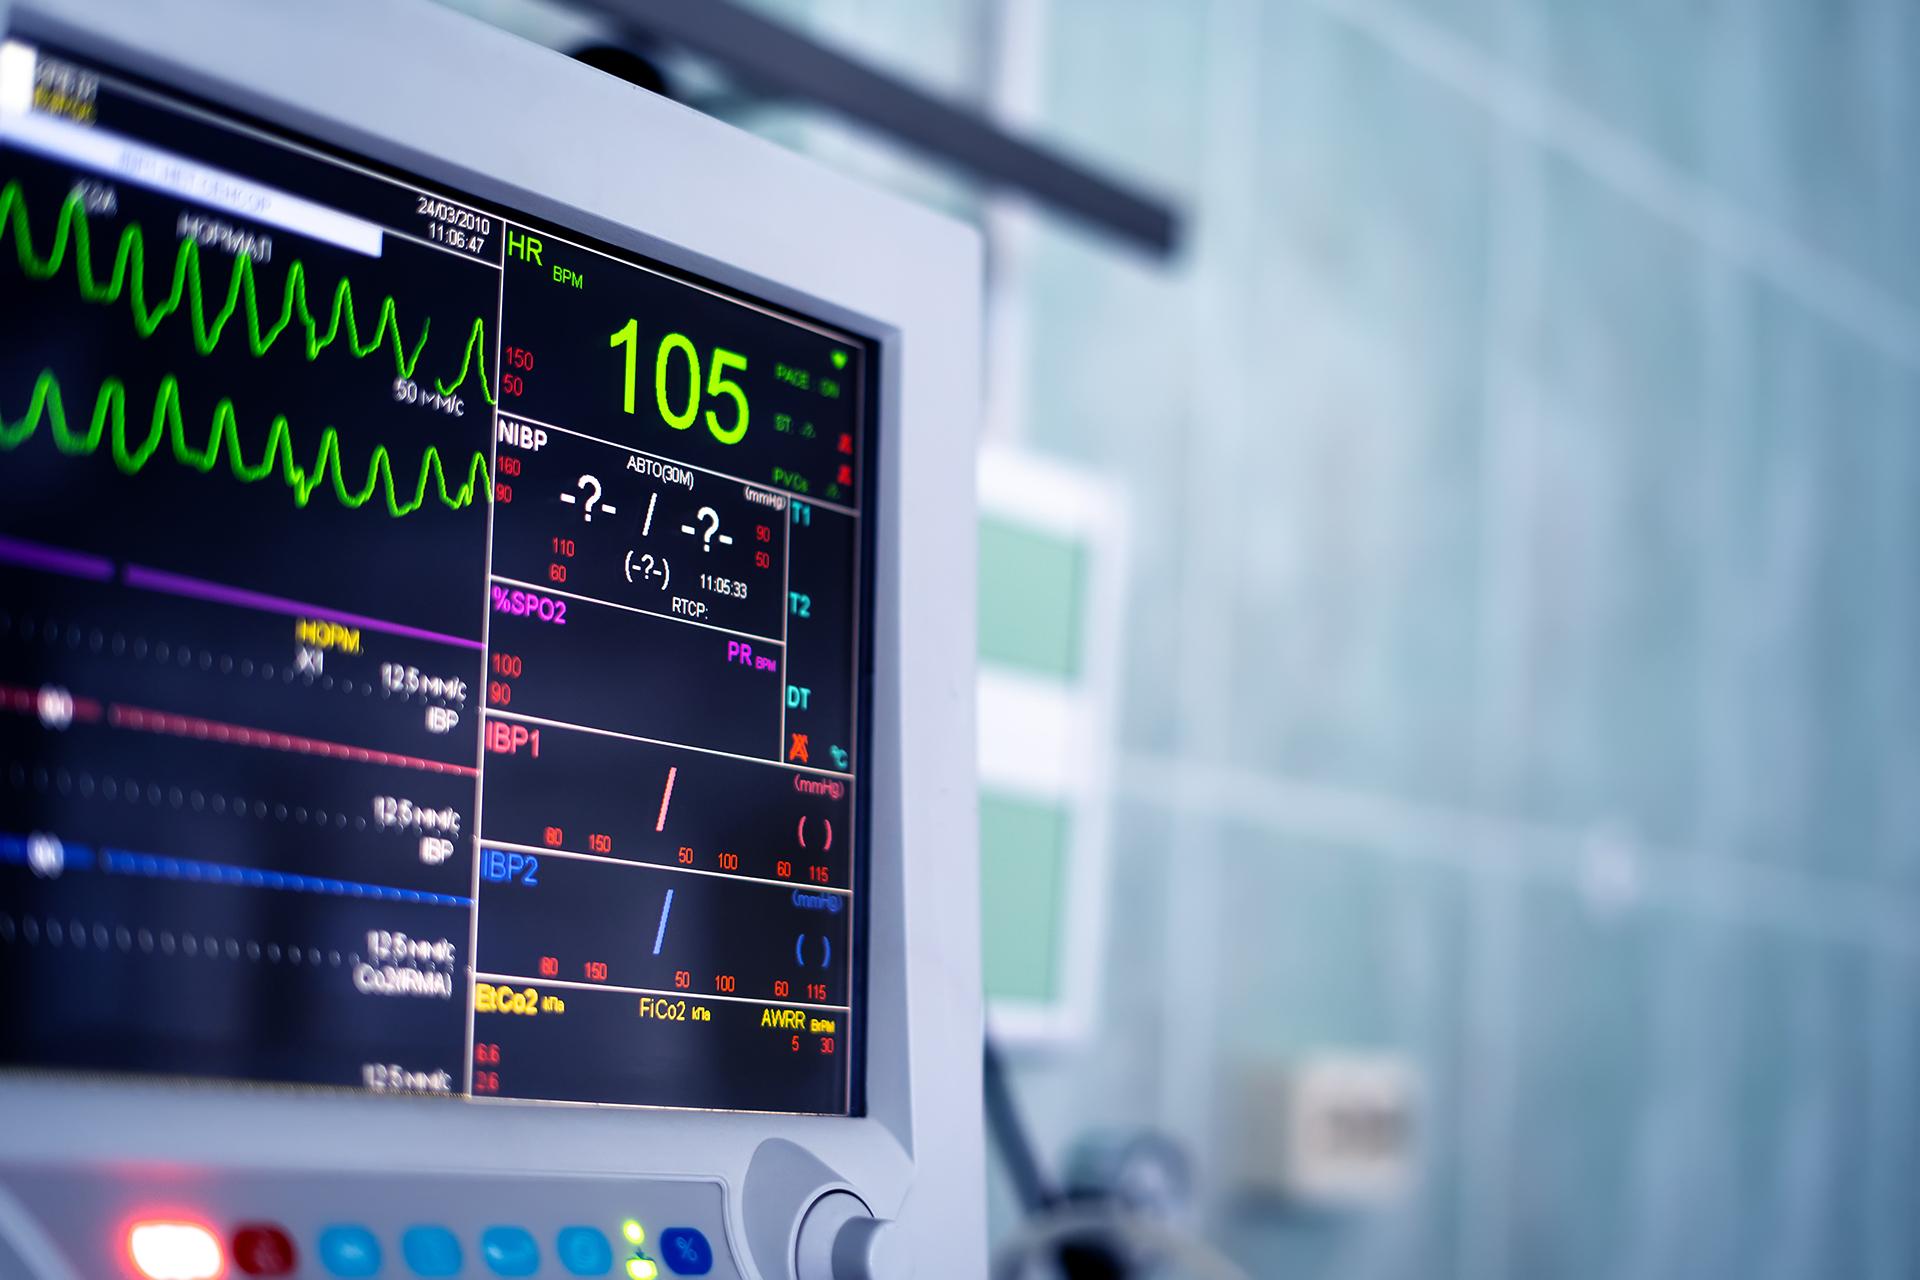 इलेक्ट्रोकार्डियोग्राम हृदयाच्या चाचण्या का केल्या जातात? प्रकार आणि उद्देश काय आहेत?